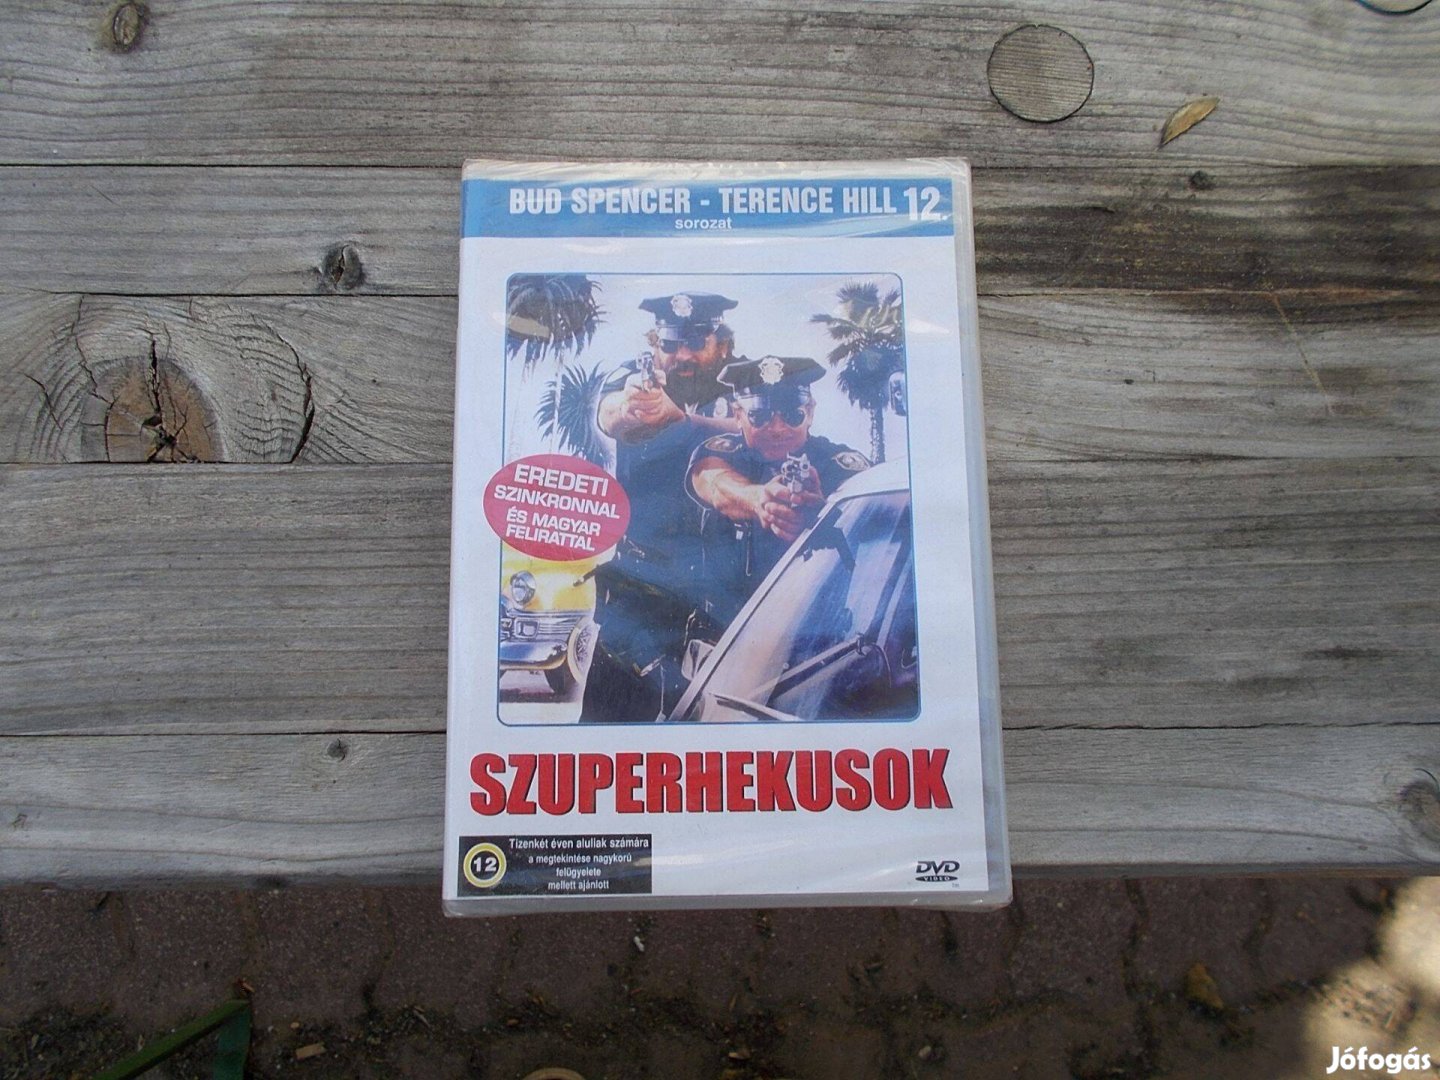 Szuperhekusok Bud Spenser-Terence Hill DVD bontatlan!!